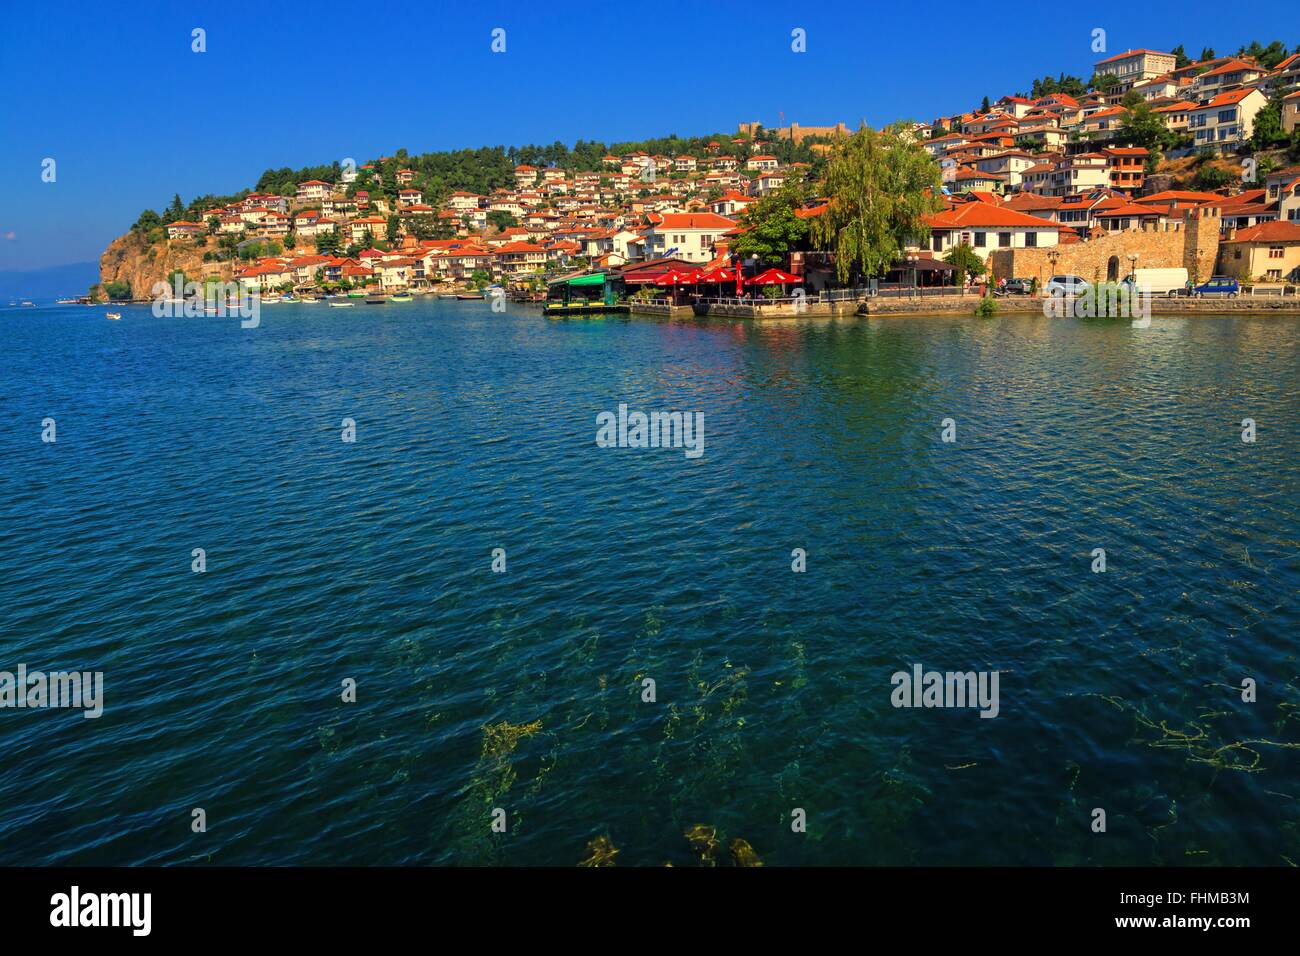 Le village au bord du lac Ohrid Ohrid en Macédoine. Tourné dans le lac. Le lac d'Ohrid est l'un des plus vieux lacs du monde. Banque D'Images